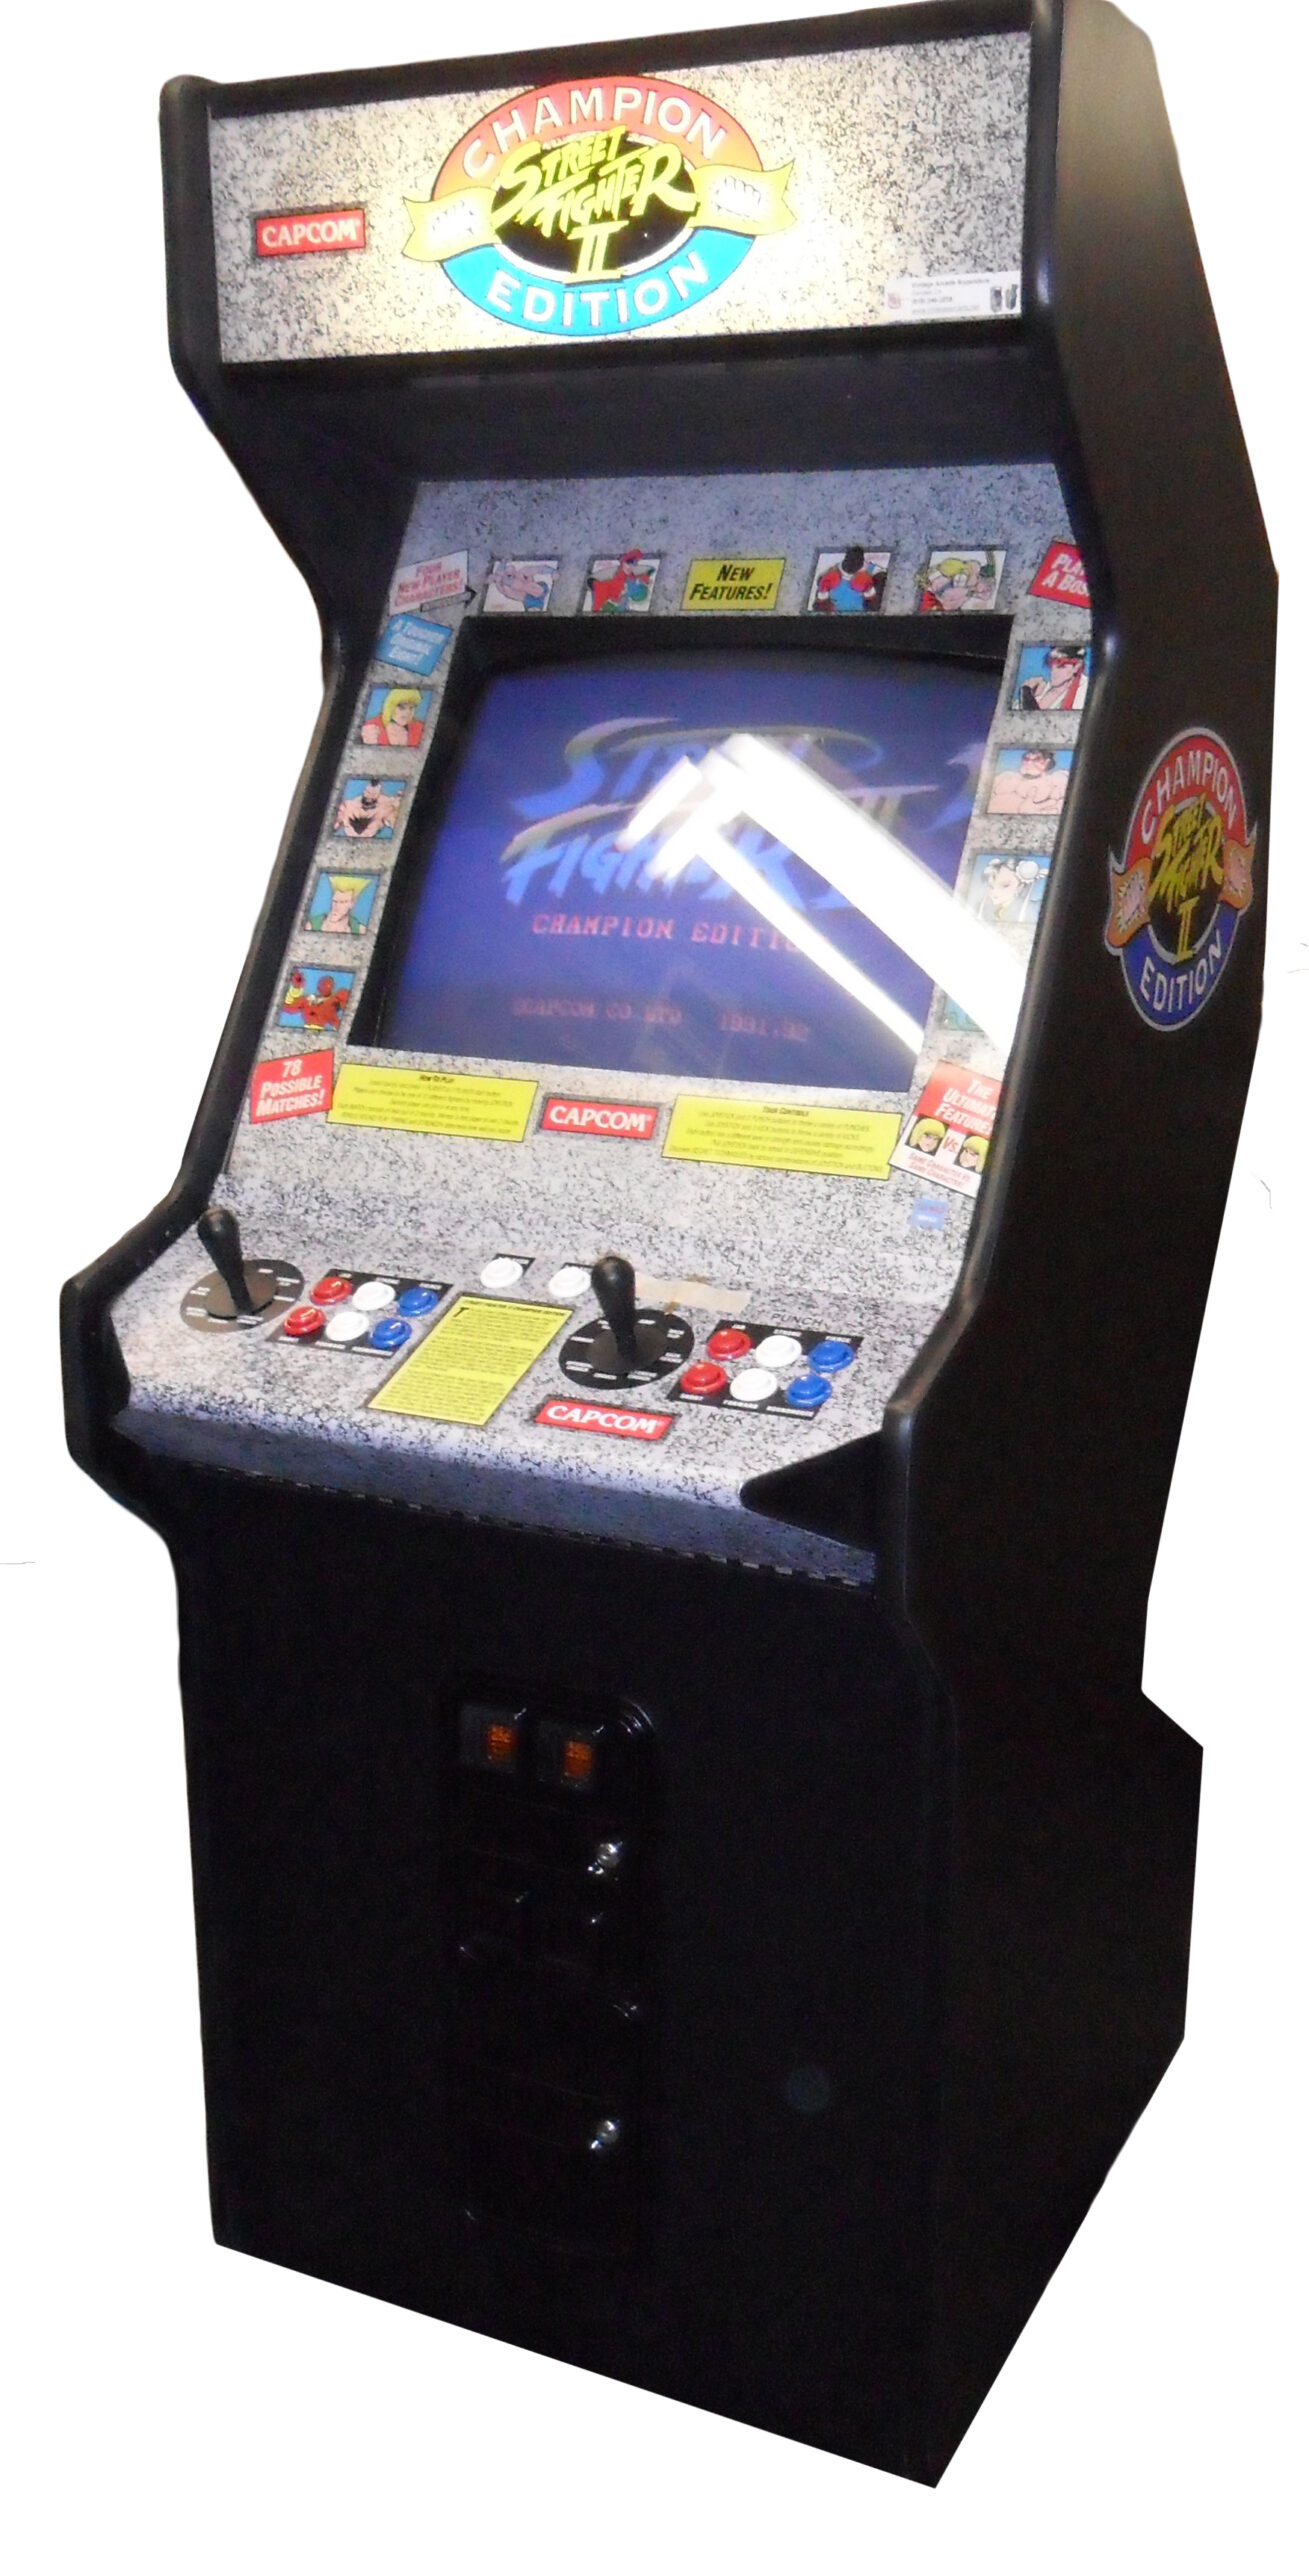 street fighter 2 arcade machines